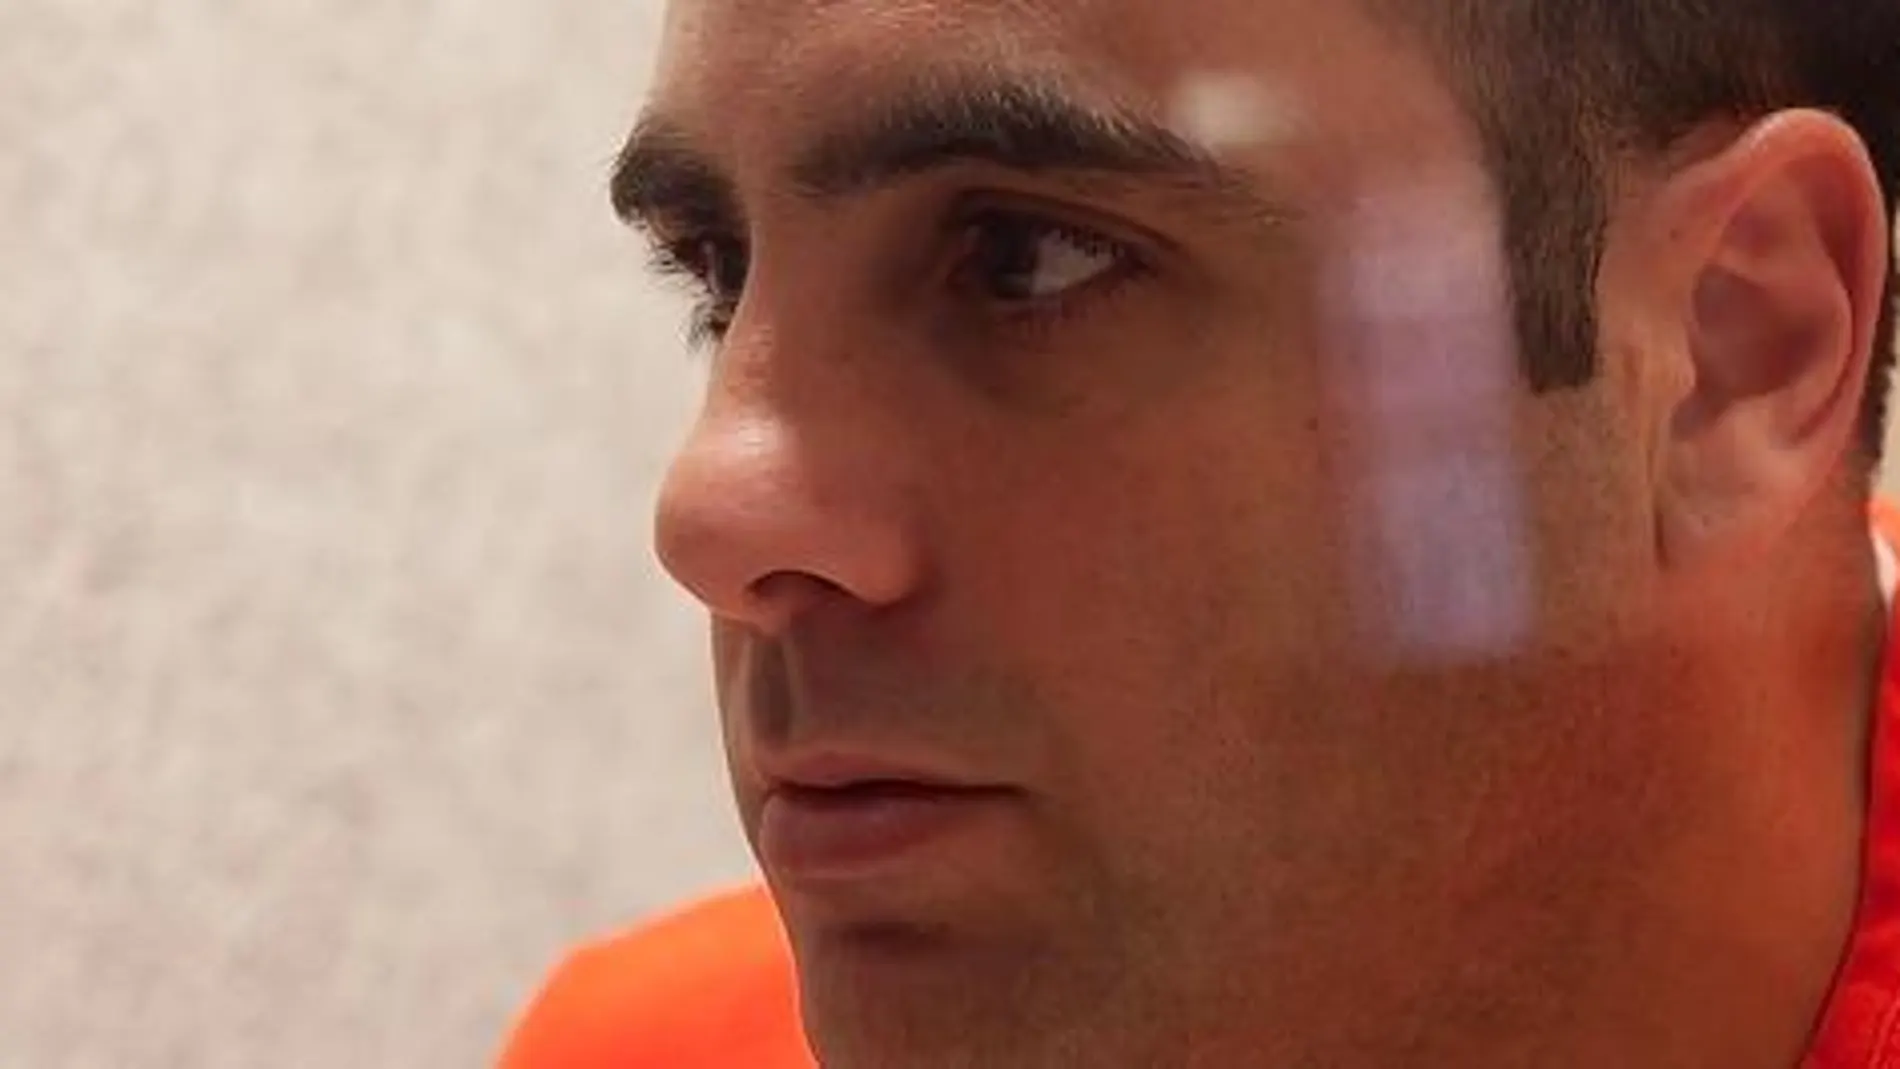 Exteriores concede 29.000 euros para la defensa de Pablo Ibar, en el corredor de la muerte